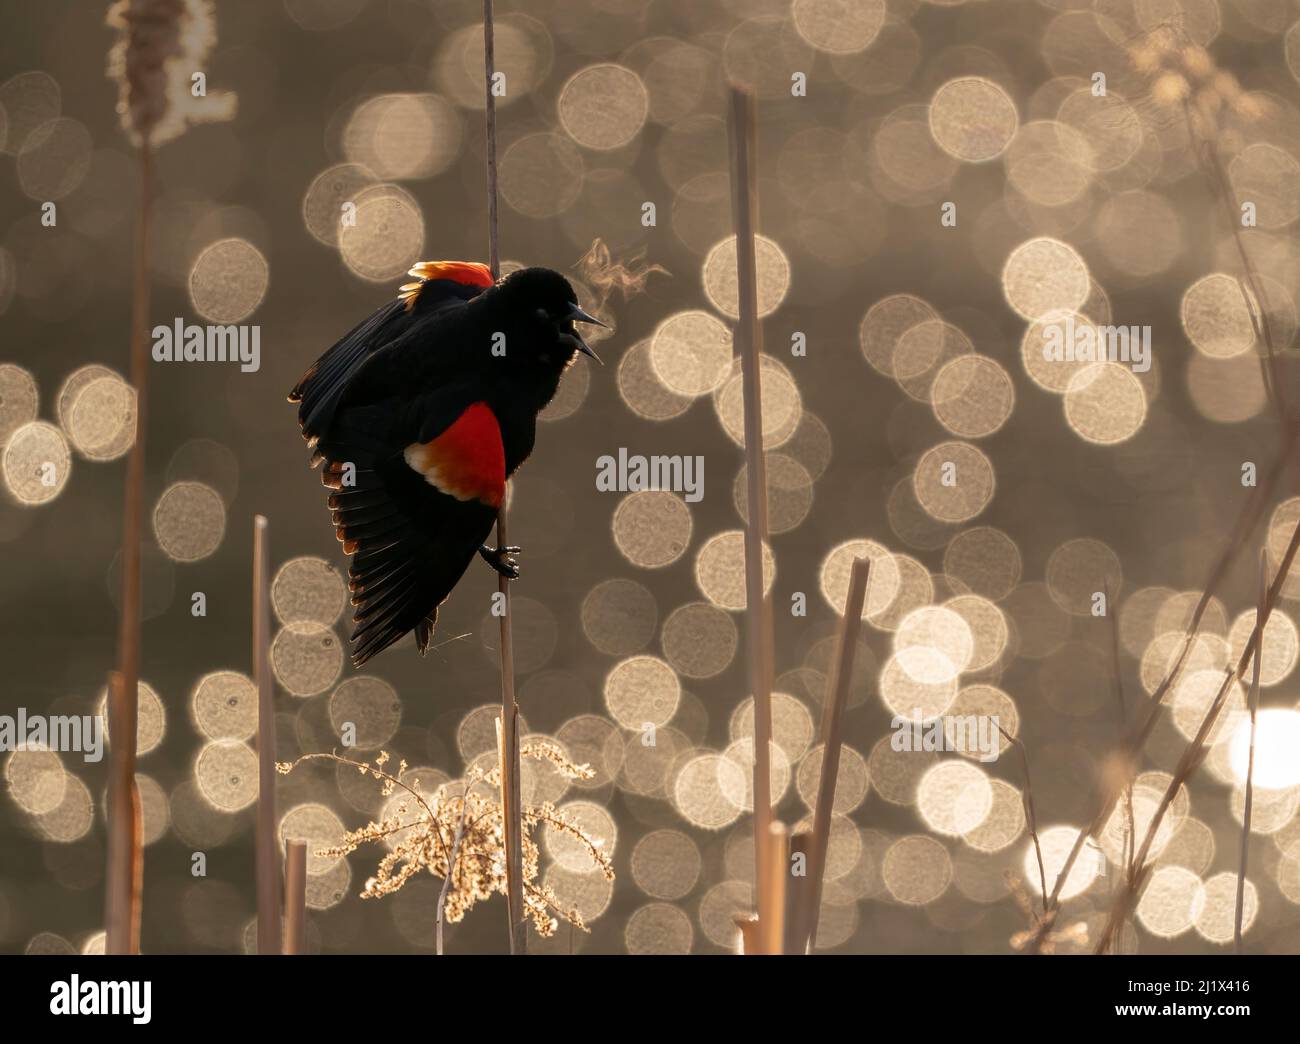 Black bird à aigree rouge (Agelaius phoeniceus) homme appelant/exposant, Ithaca, New York, États-Unis. Mars 2020. Banque D'Images